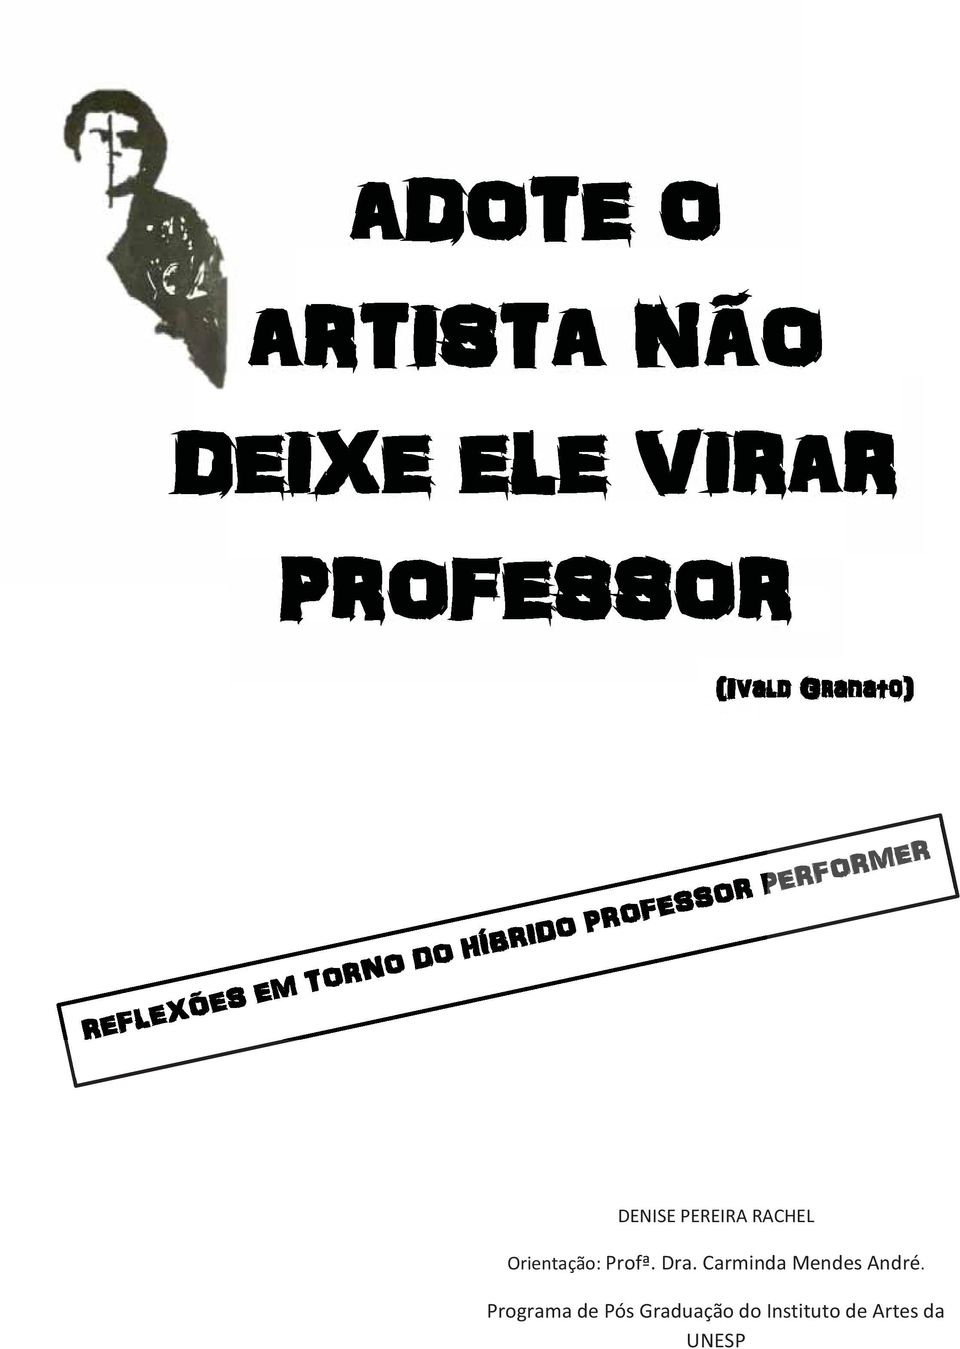 Orientação: Profª. Dra. Carminda Mendes André.